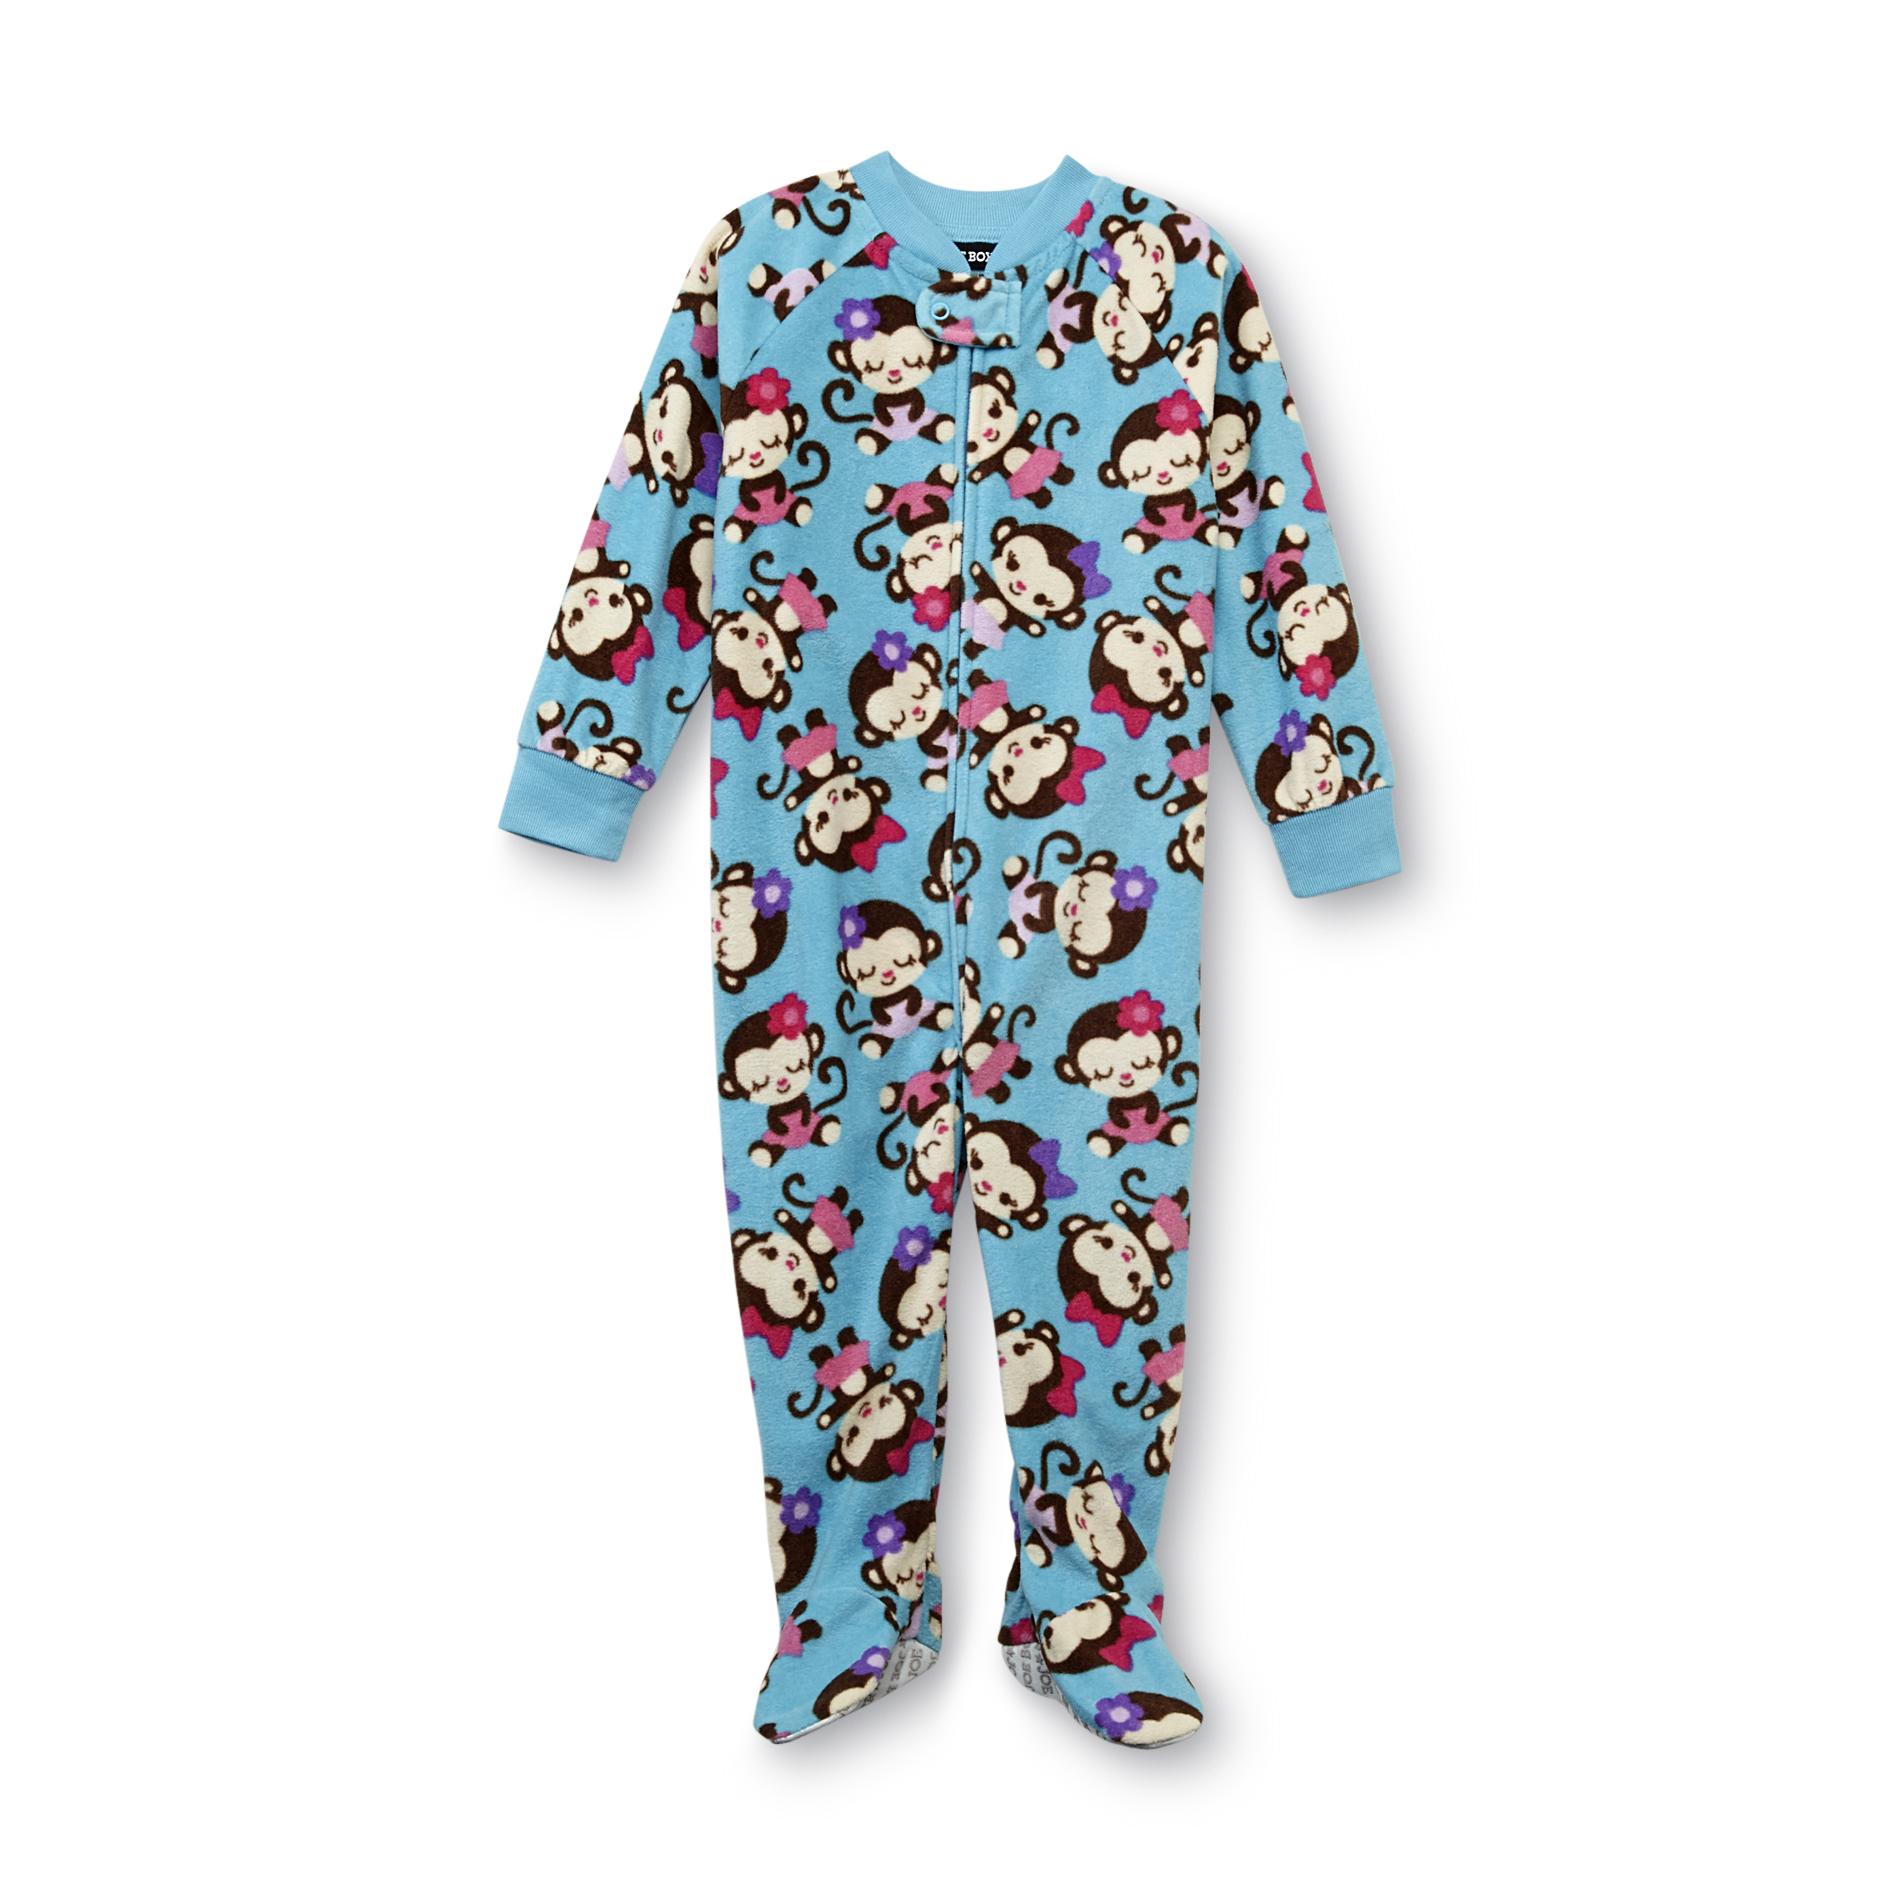 Joe Boxer Infant & Toddler Girl's Fleece Footed Sleeper Pajamas - Monkey